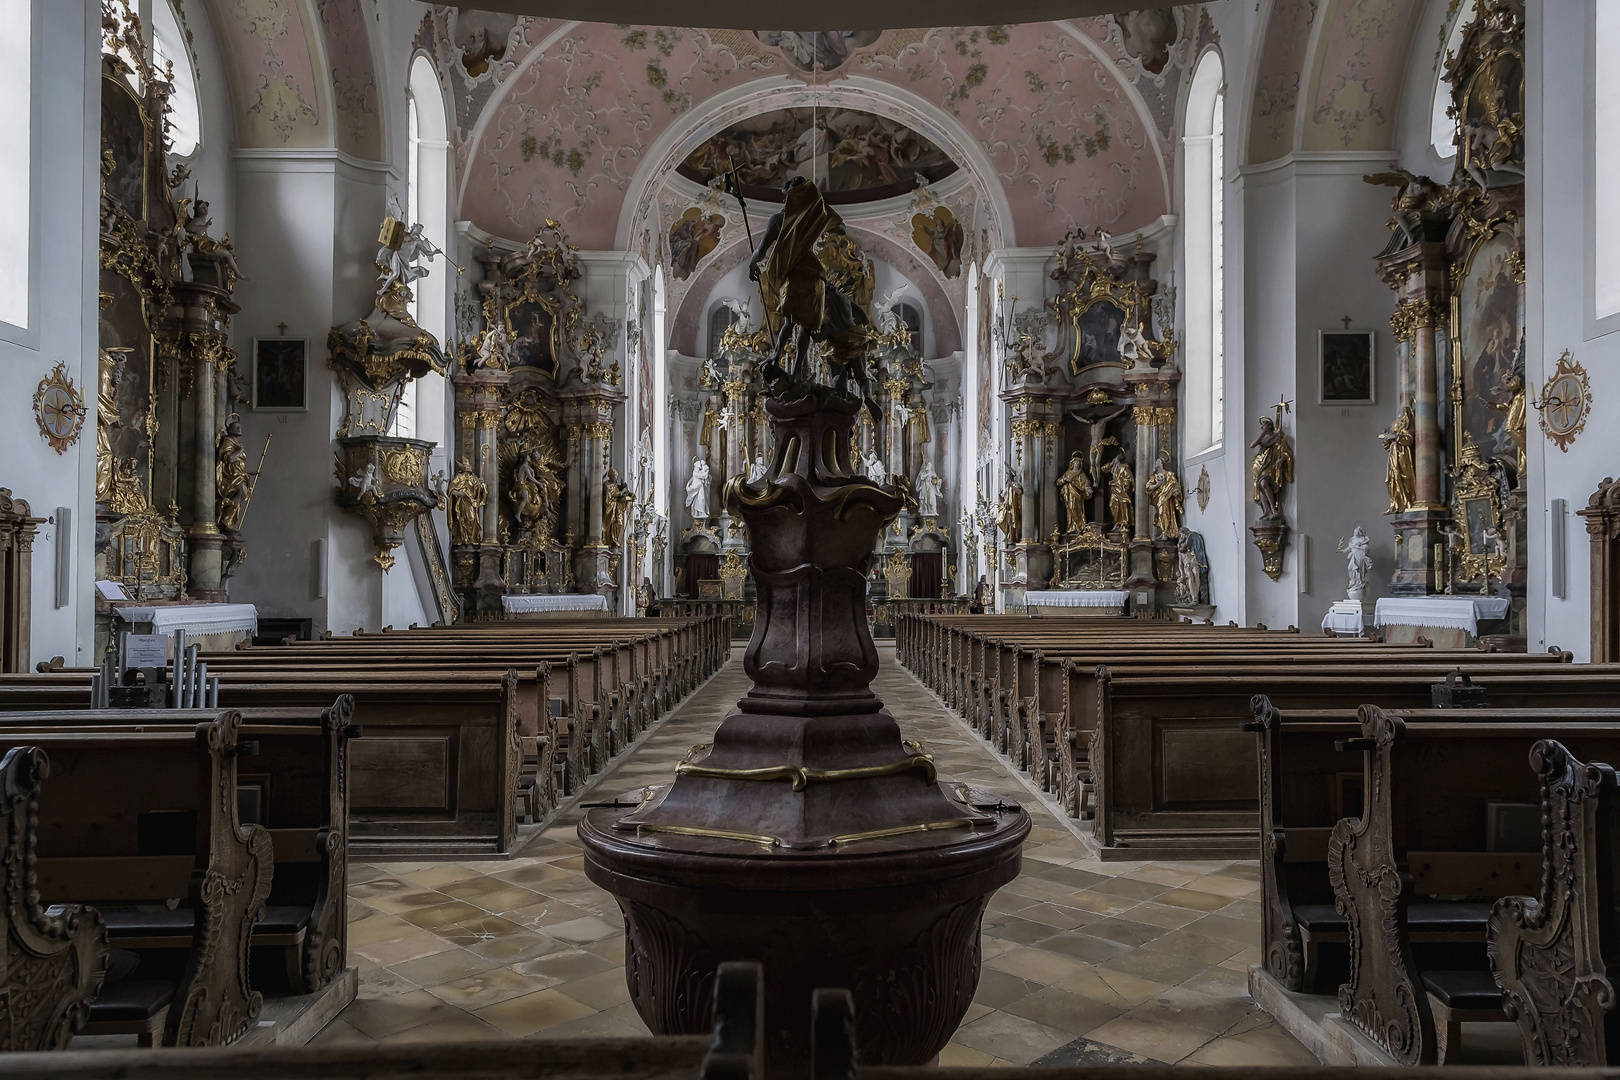 Oberammergau St. Peter und Paul 01